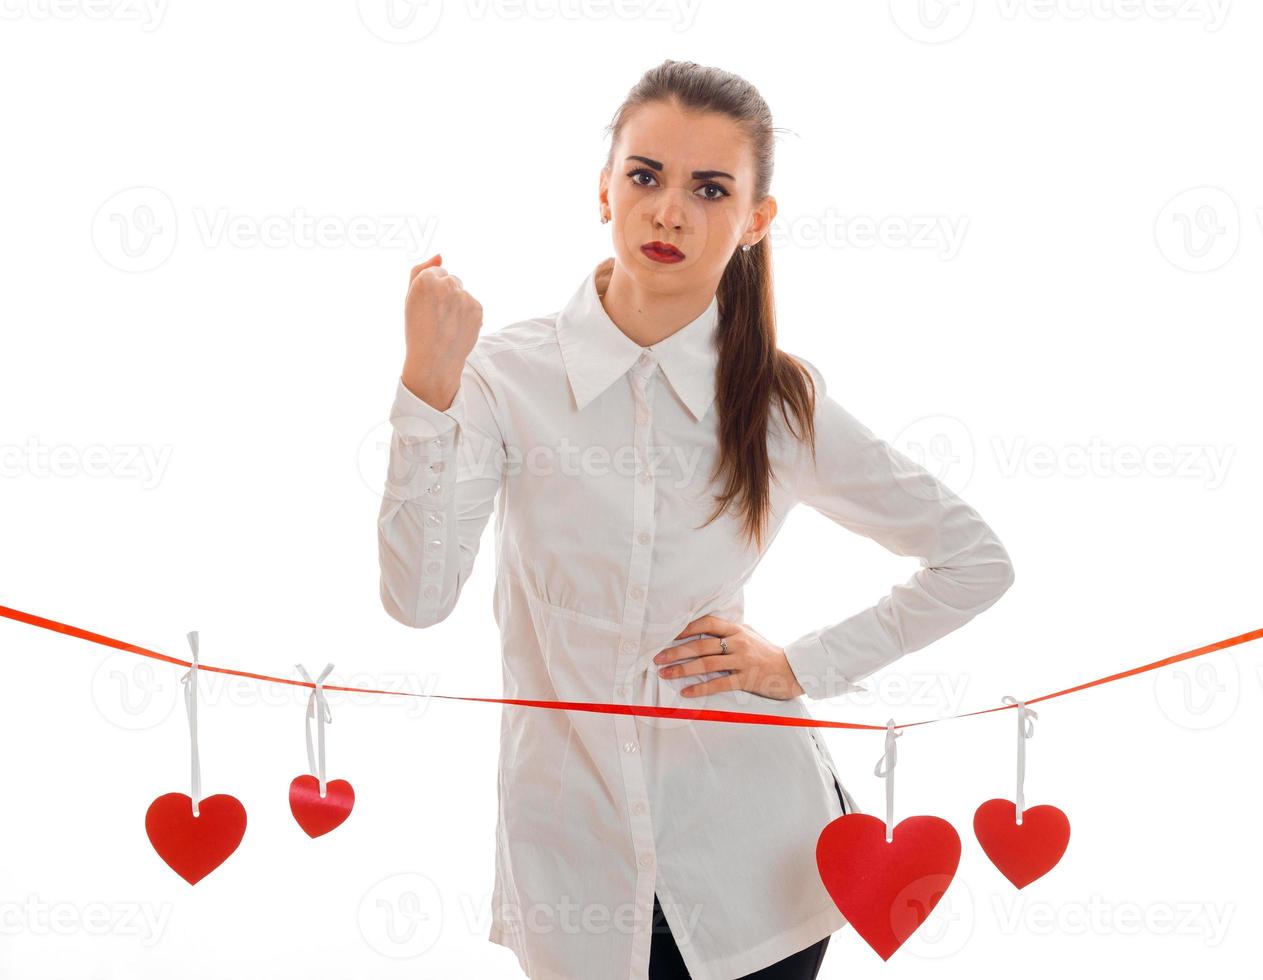 hermosa joven con camisa blanca y pintalabios rojo en los labios se encuentra cerca de la cinta con tarjetas en forma de corazón foto